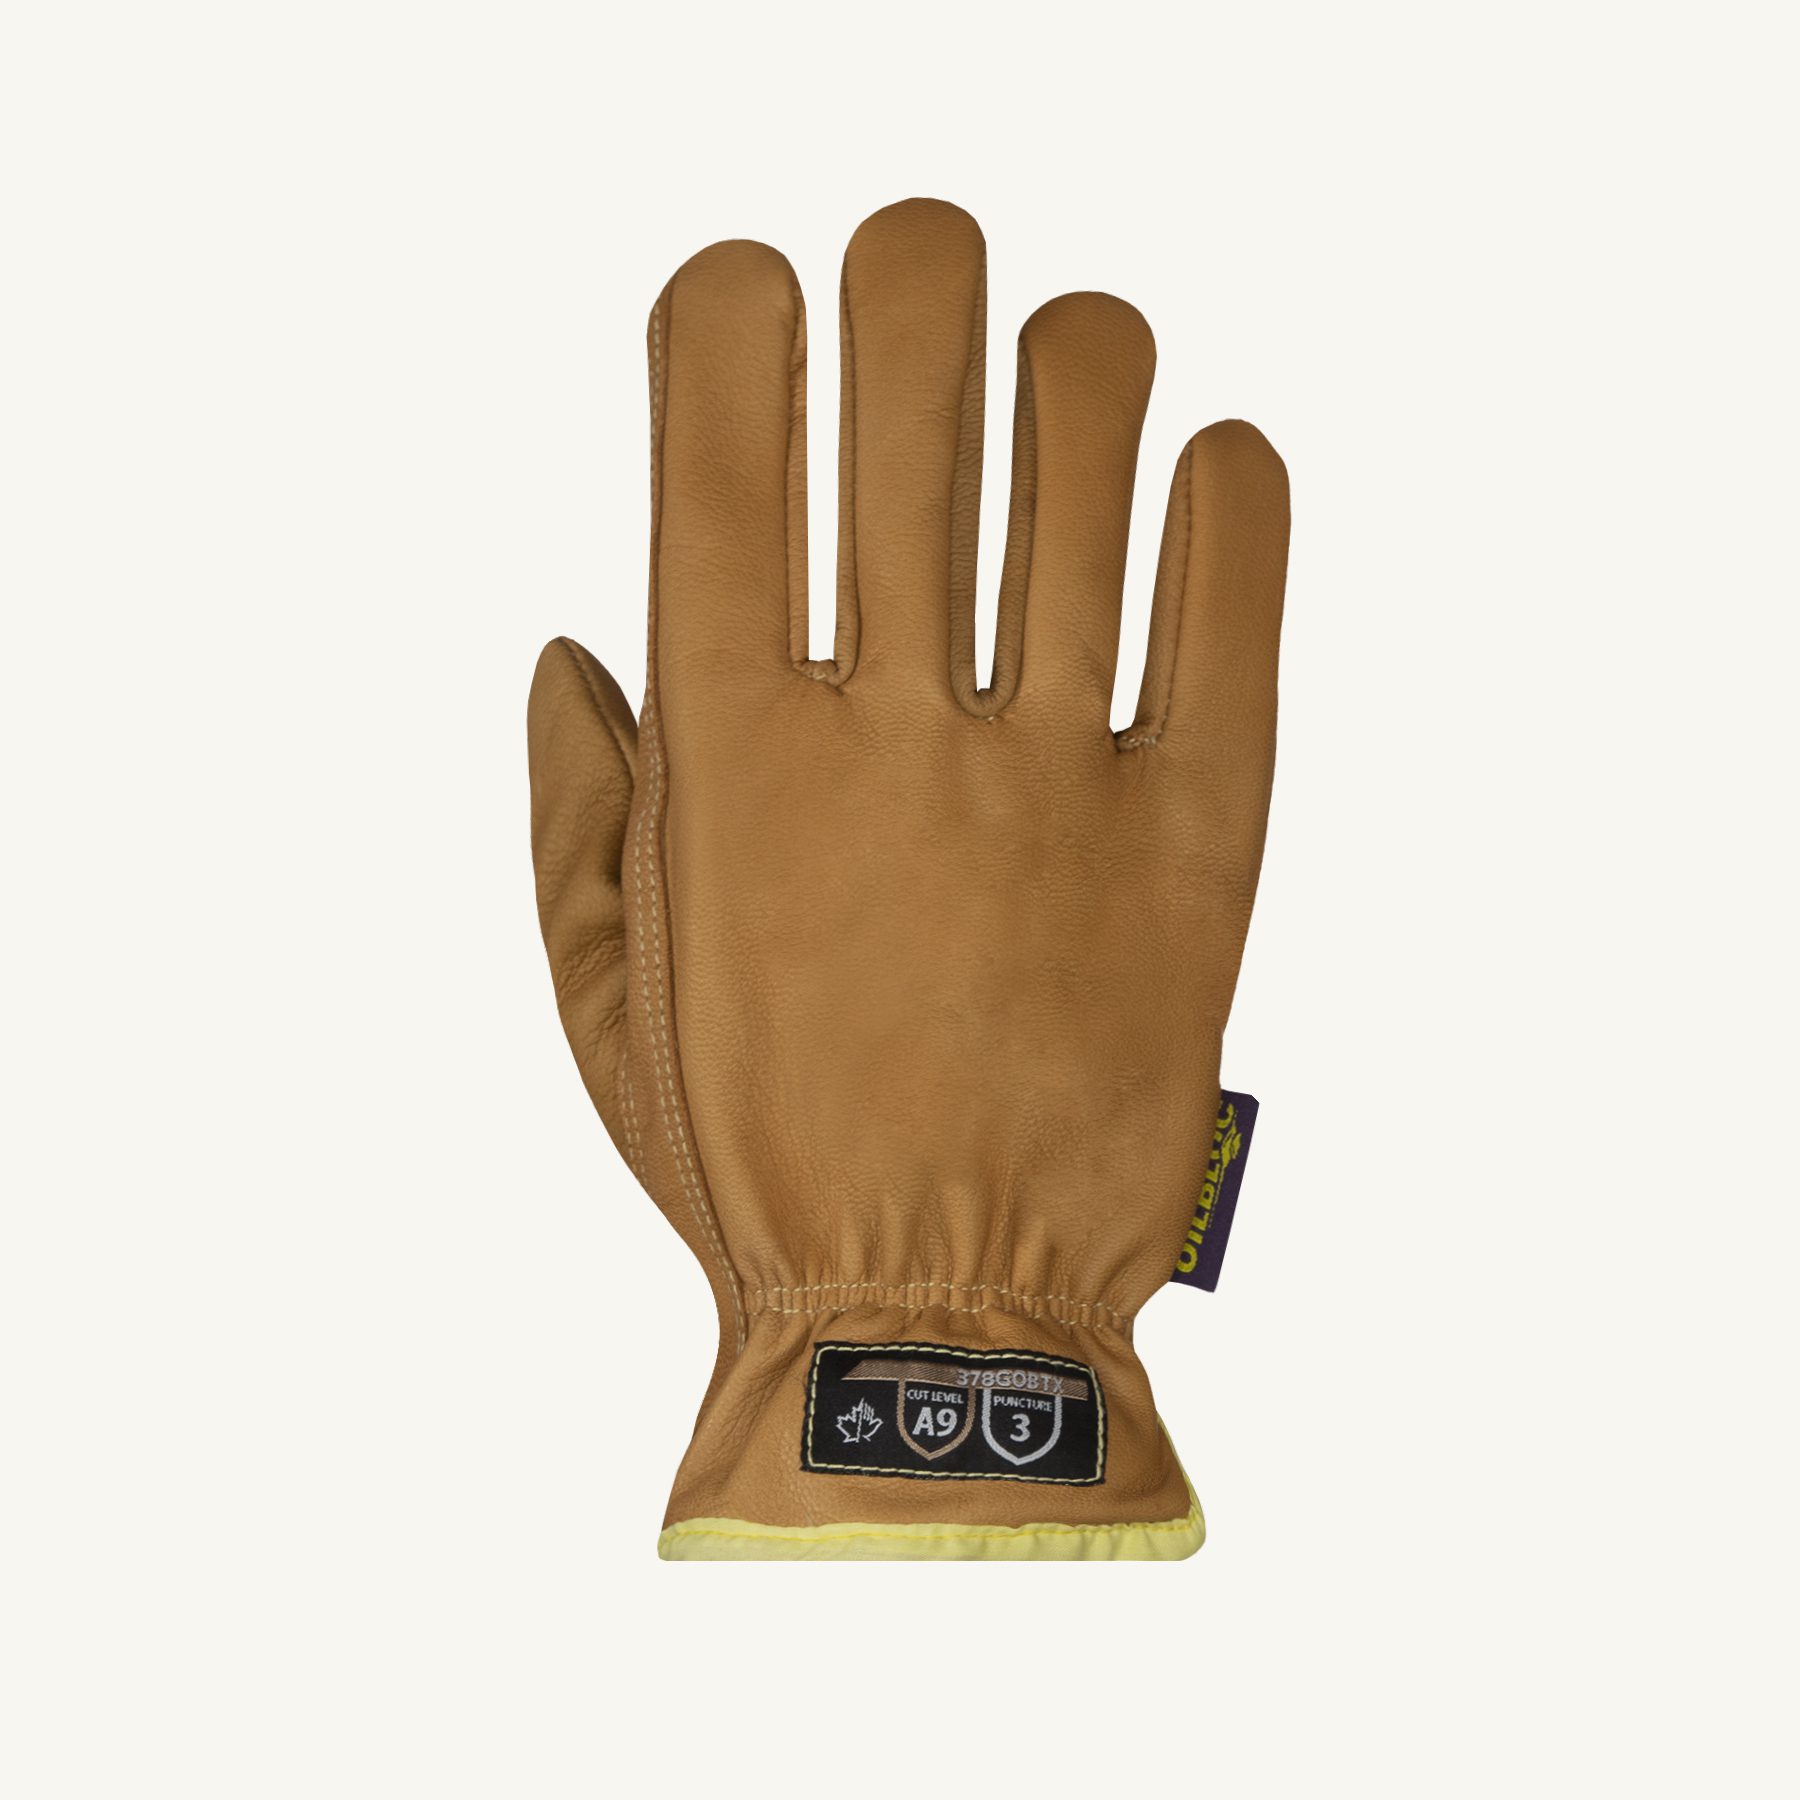 Guantes mecánicos guantes de utilidad protección contra impactos doble  palma cuero sintético elástico transpirable